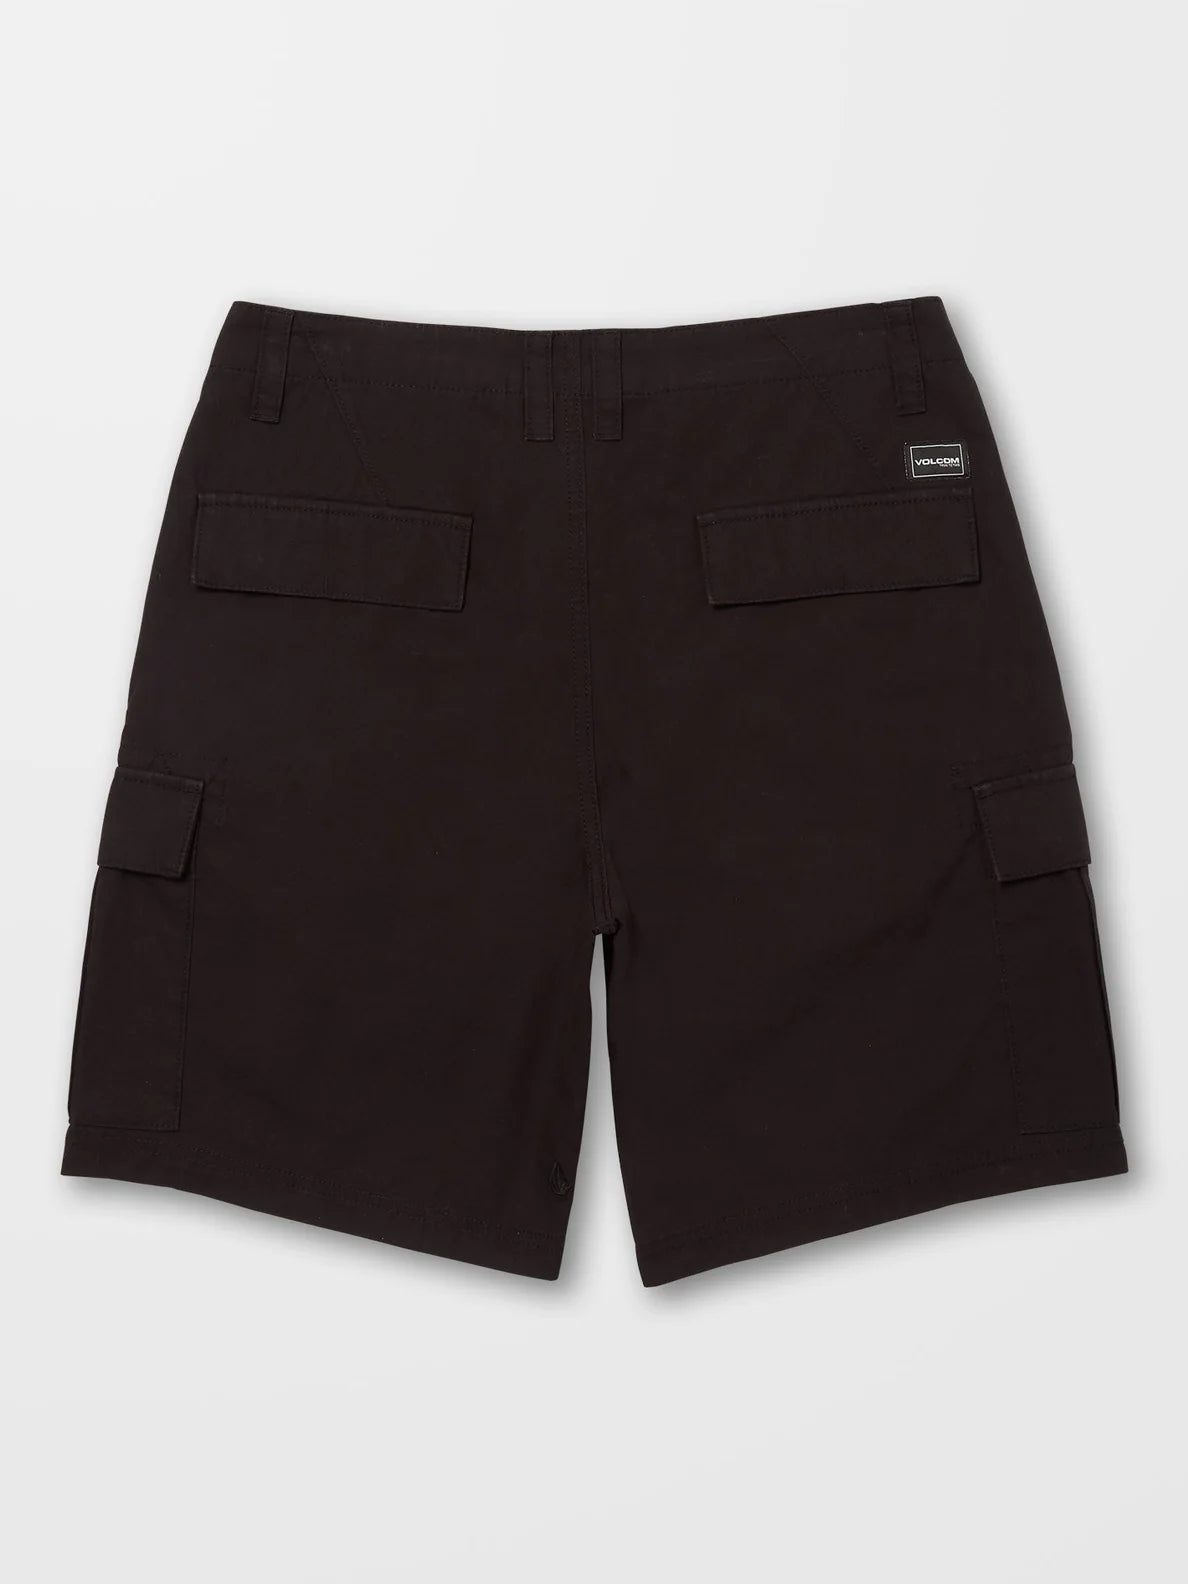 Pantalón Corto Volcom March Cargo Short - Black | Pantalones cortos de Hombre | Todos los pantalones de hombre | Volcom Shop | surfdevils.com